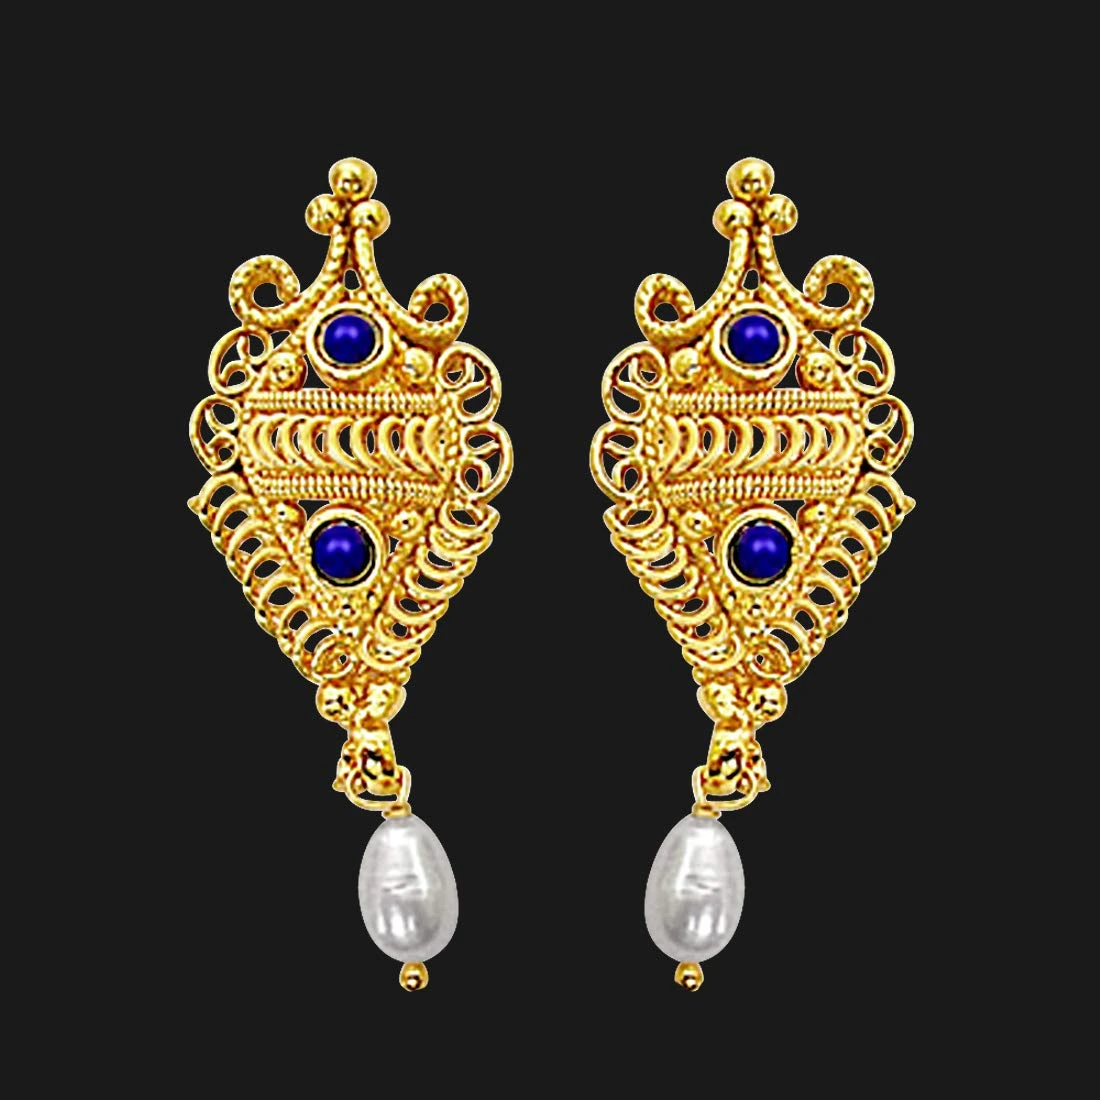 Fancy Shaped Freshwater Pearl, Blue Lapiz & Gold Plated Earrings for Women (SE139)